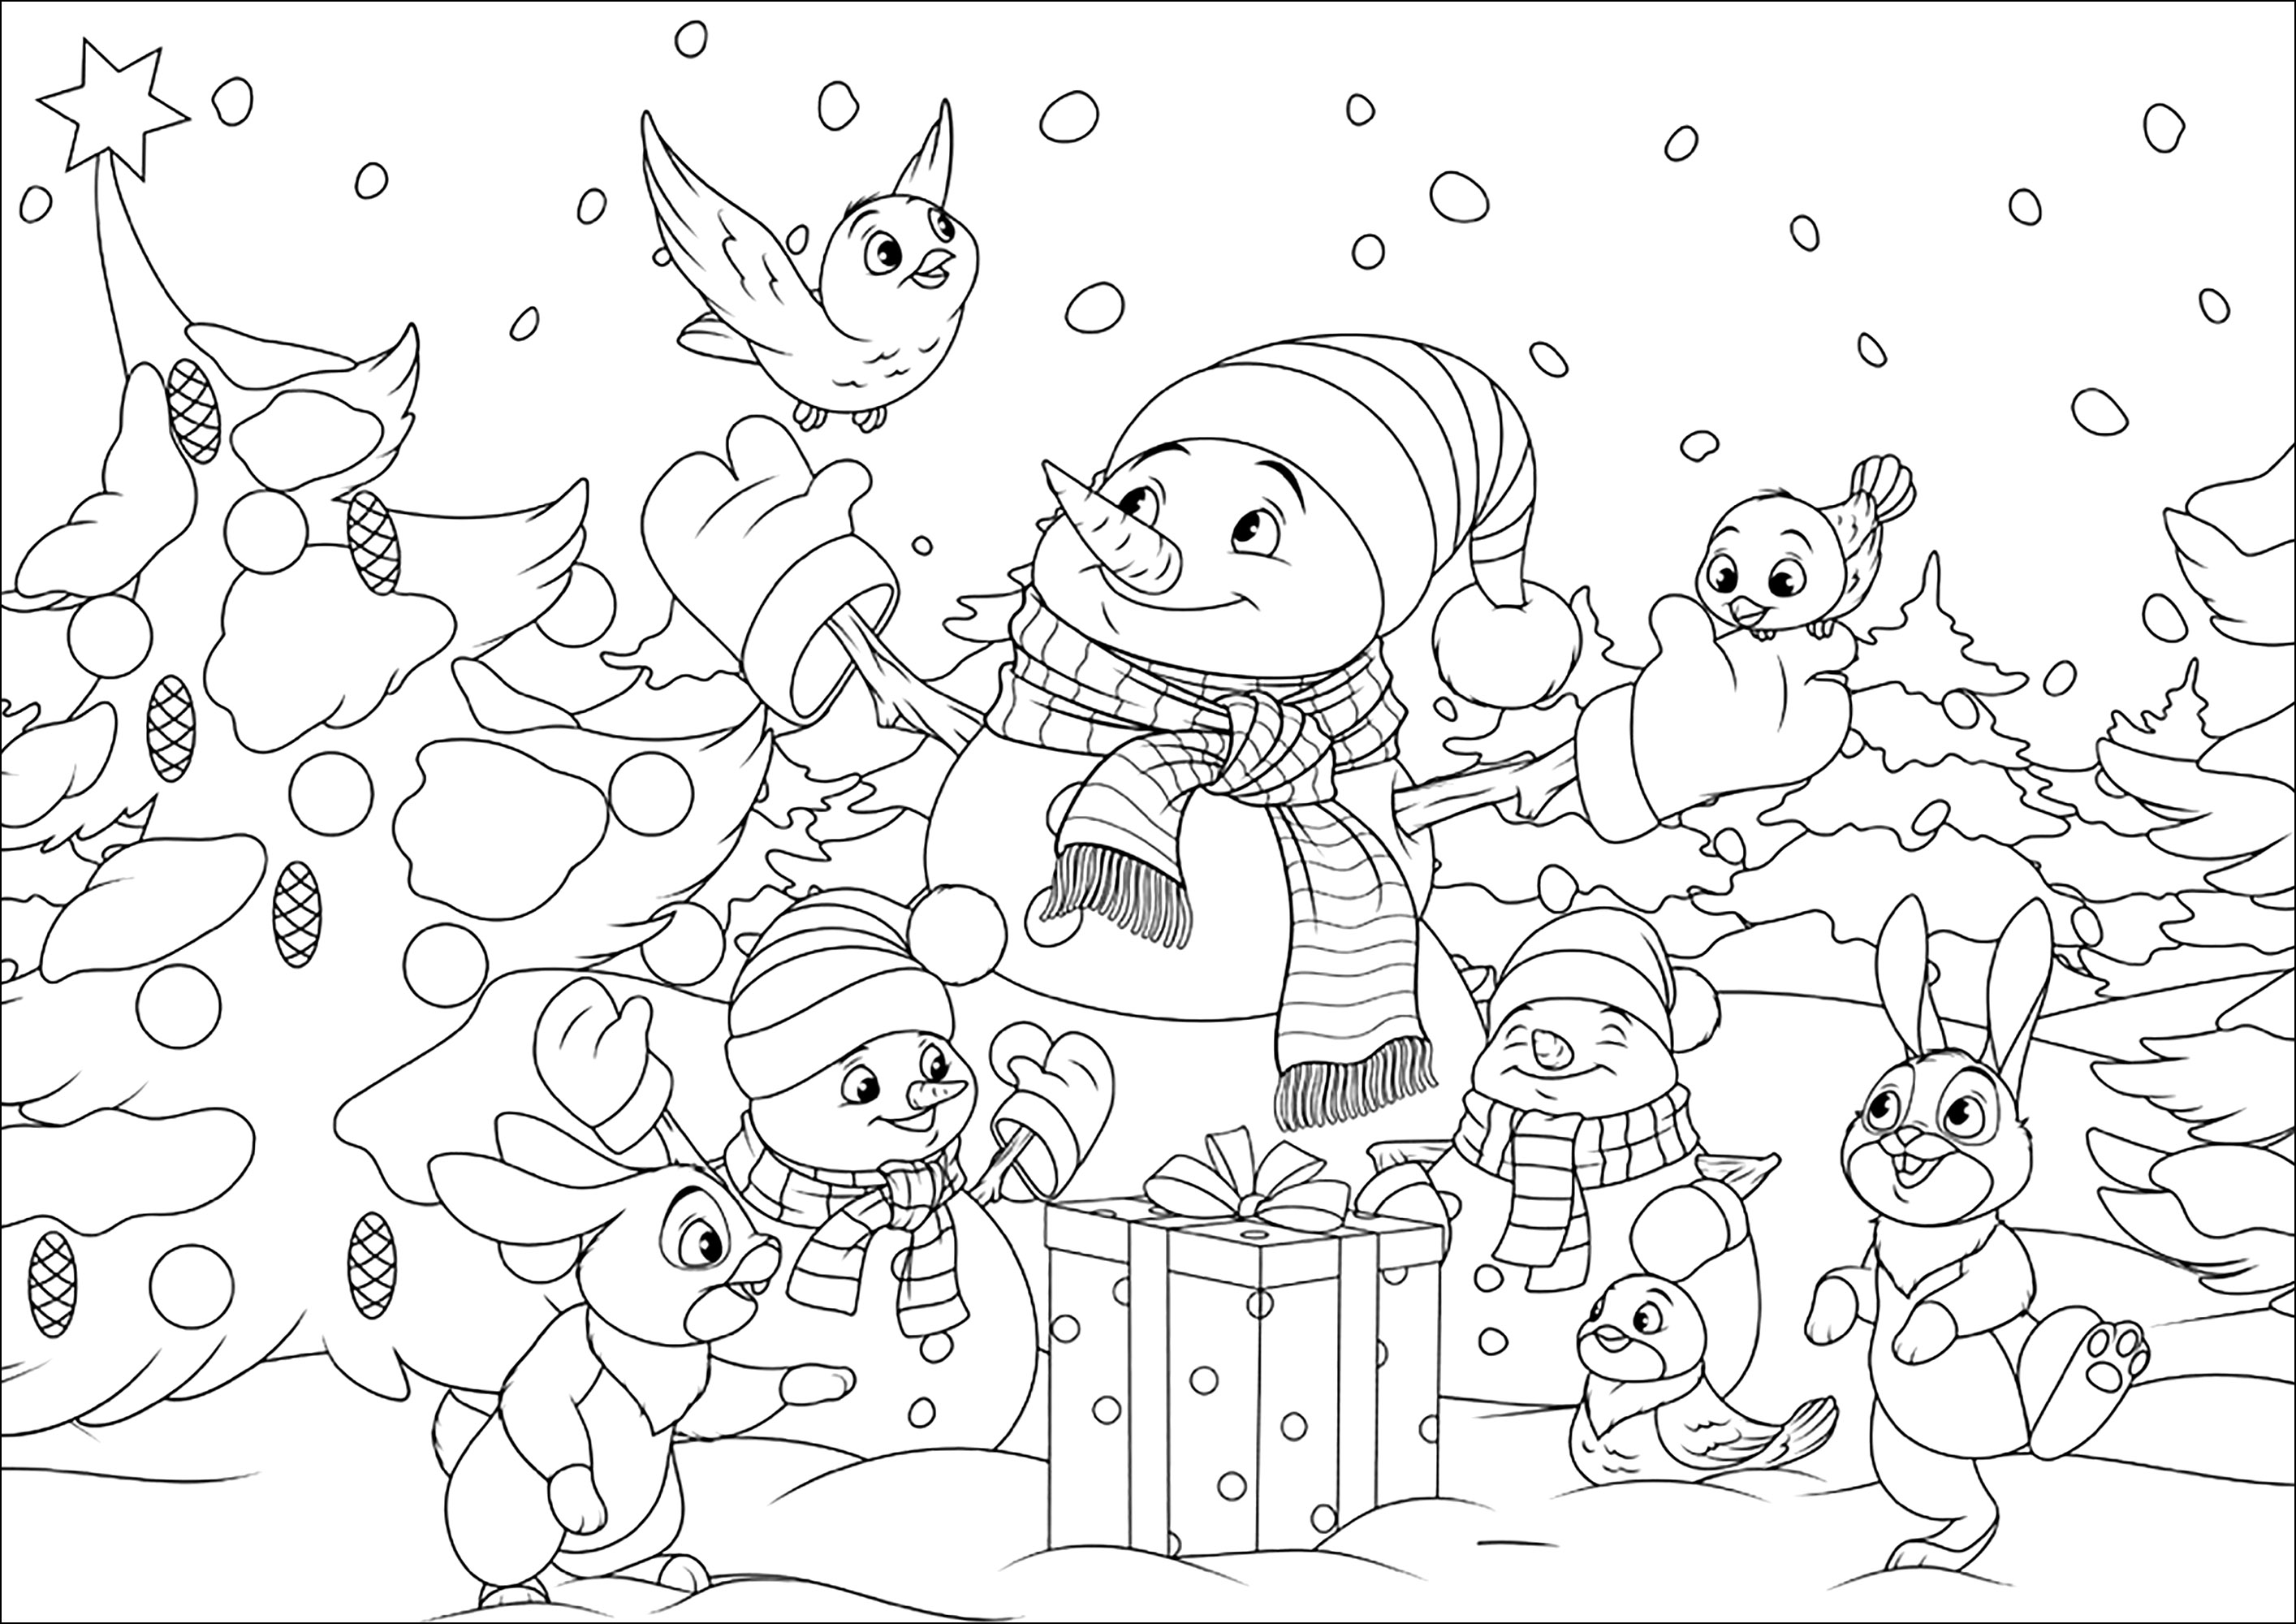 Bonecos de neve e os seus amigos da floresta. Pinte estes bonitos bonecos de neve e os seus amigos coelhos e pássaros numa paisagem de Natal com neve, Fonte : 123rf   Artista : Andrey1978